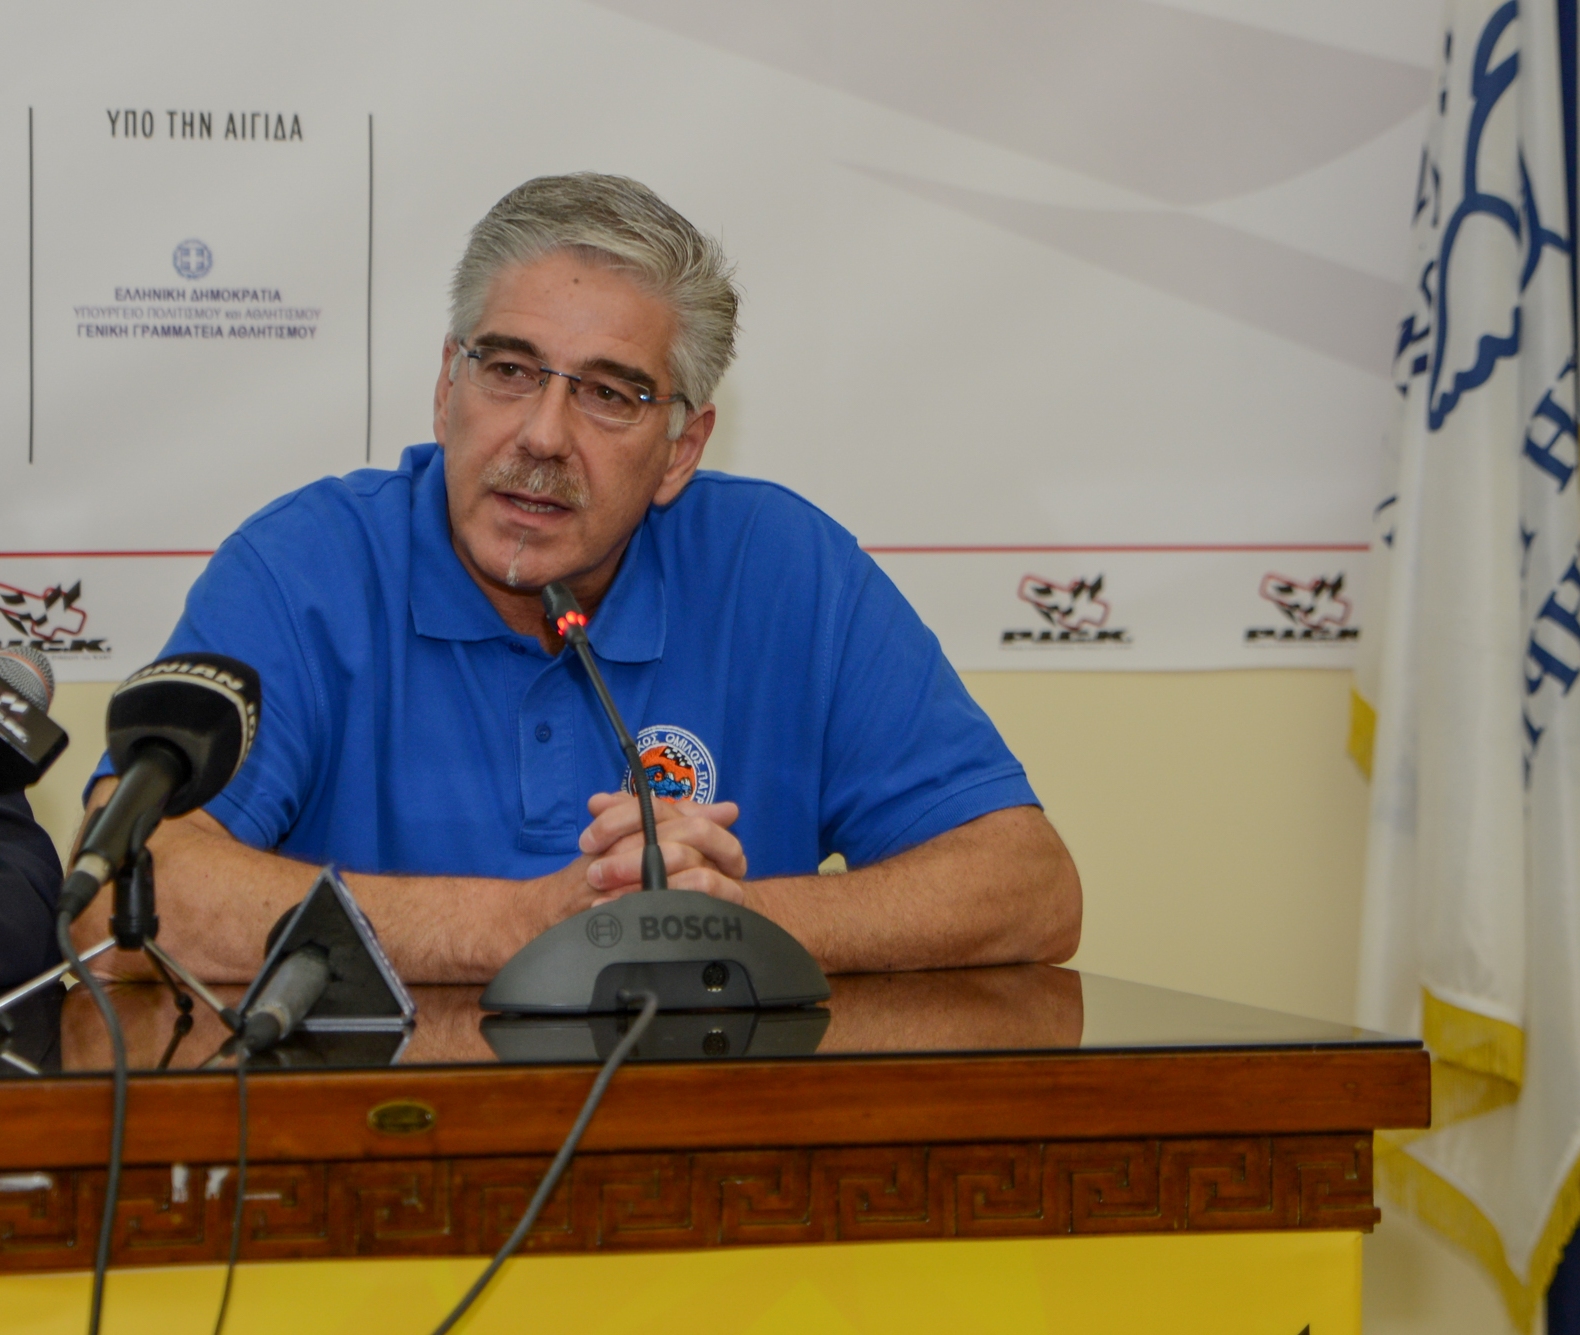 Αλ. Παυλόπουλος στον ΣΠΟΡ FM Πάτρας 96,3: «H φετινή Ανάβαση Πιτίτσας παρουσιάζει μεγάλο ενδιαφέρον»